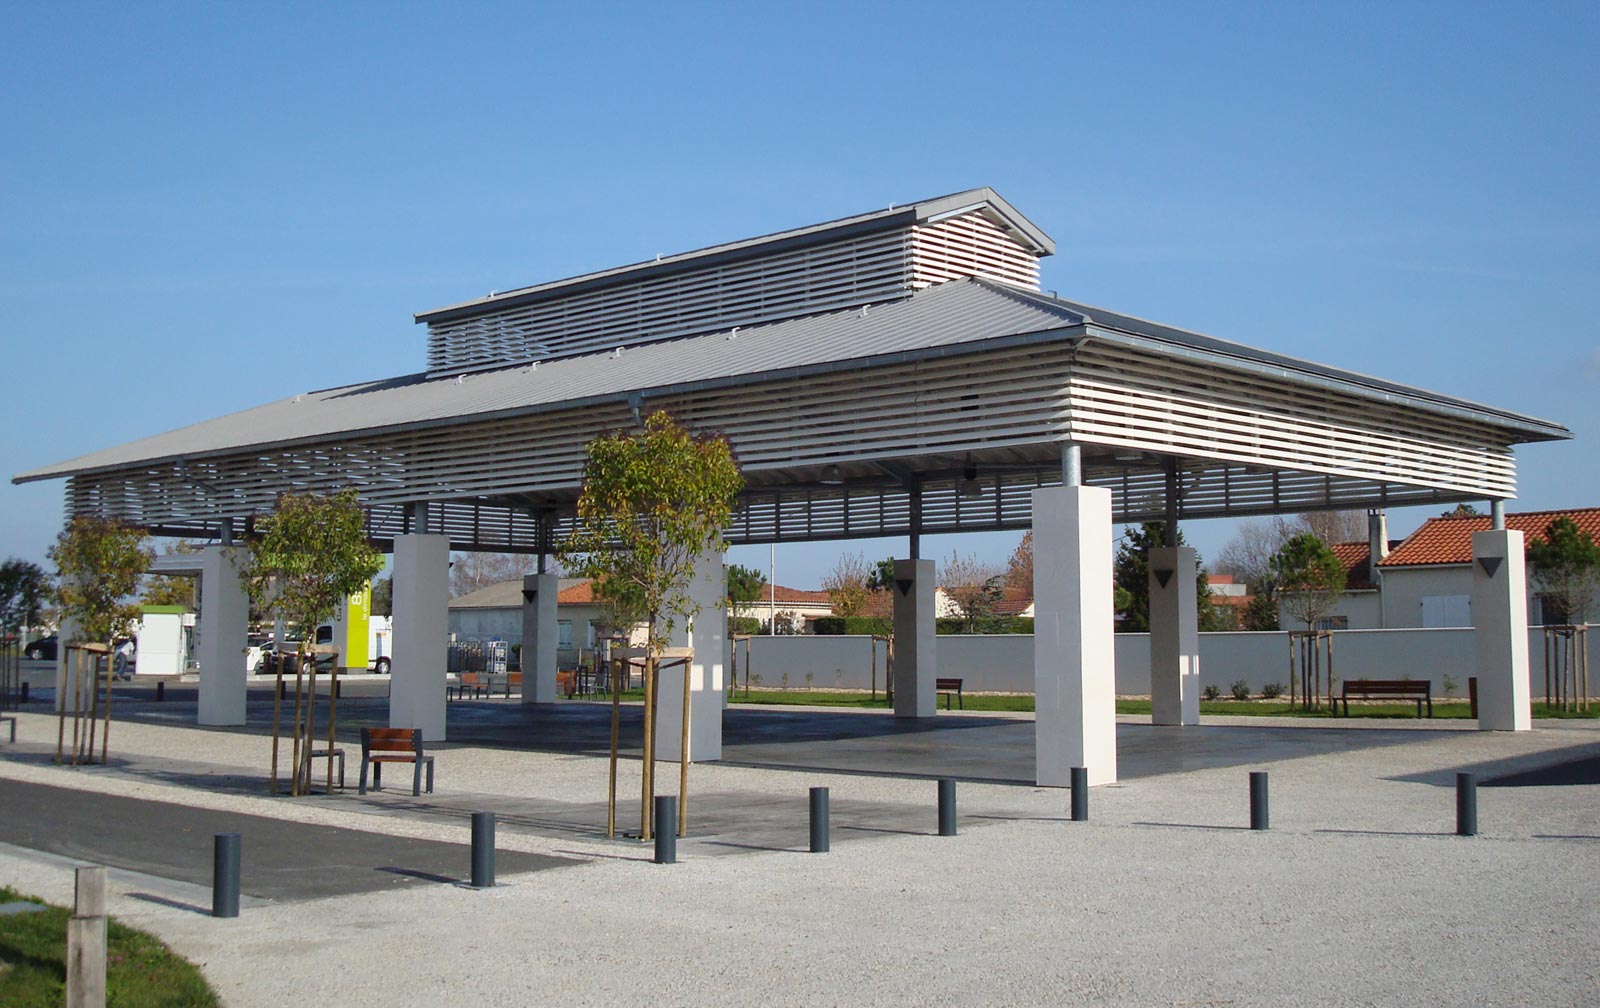 Popea Iléana - Architecte DPLG - Royan - Charente-Maritime